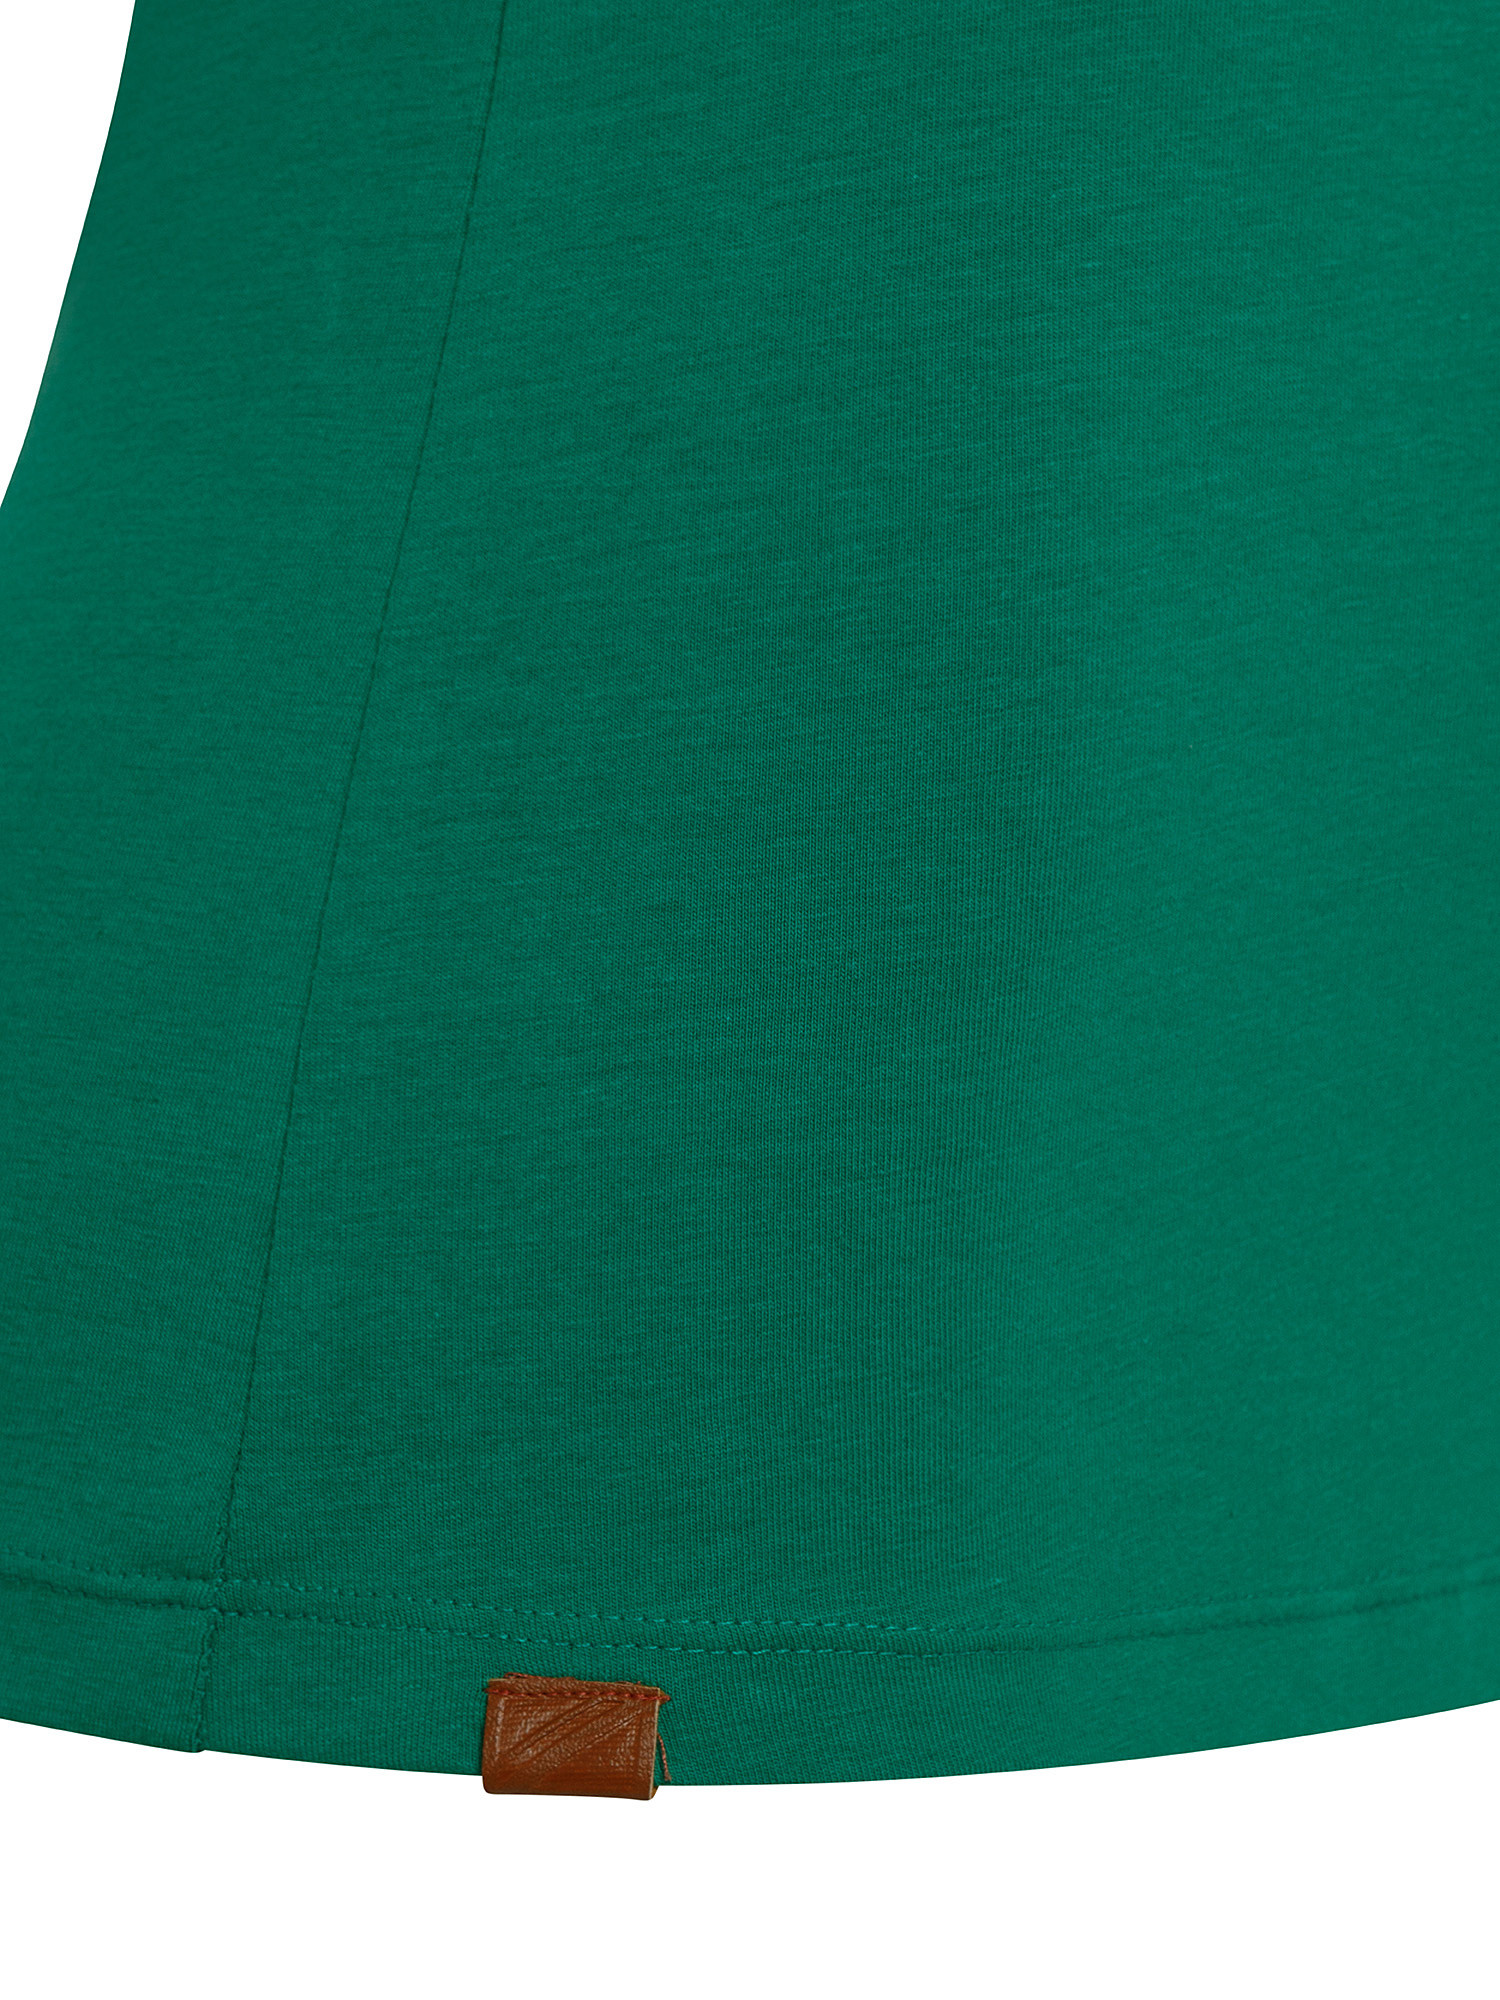 T-shirt Violette in cotone, Verde, large image number 2